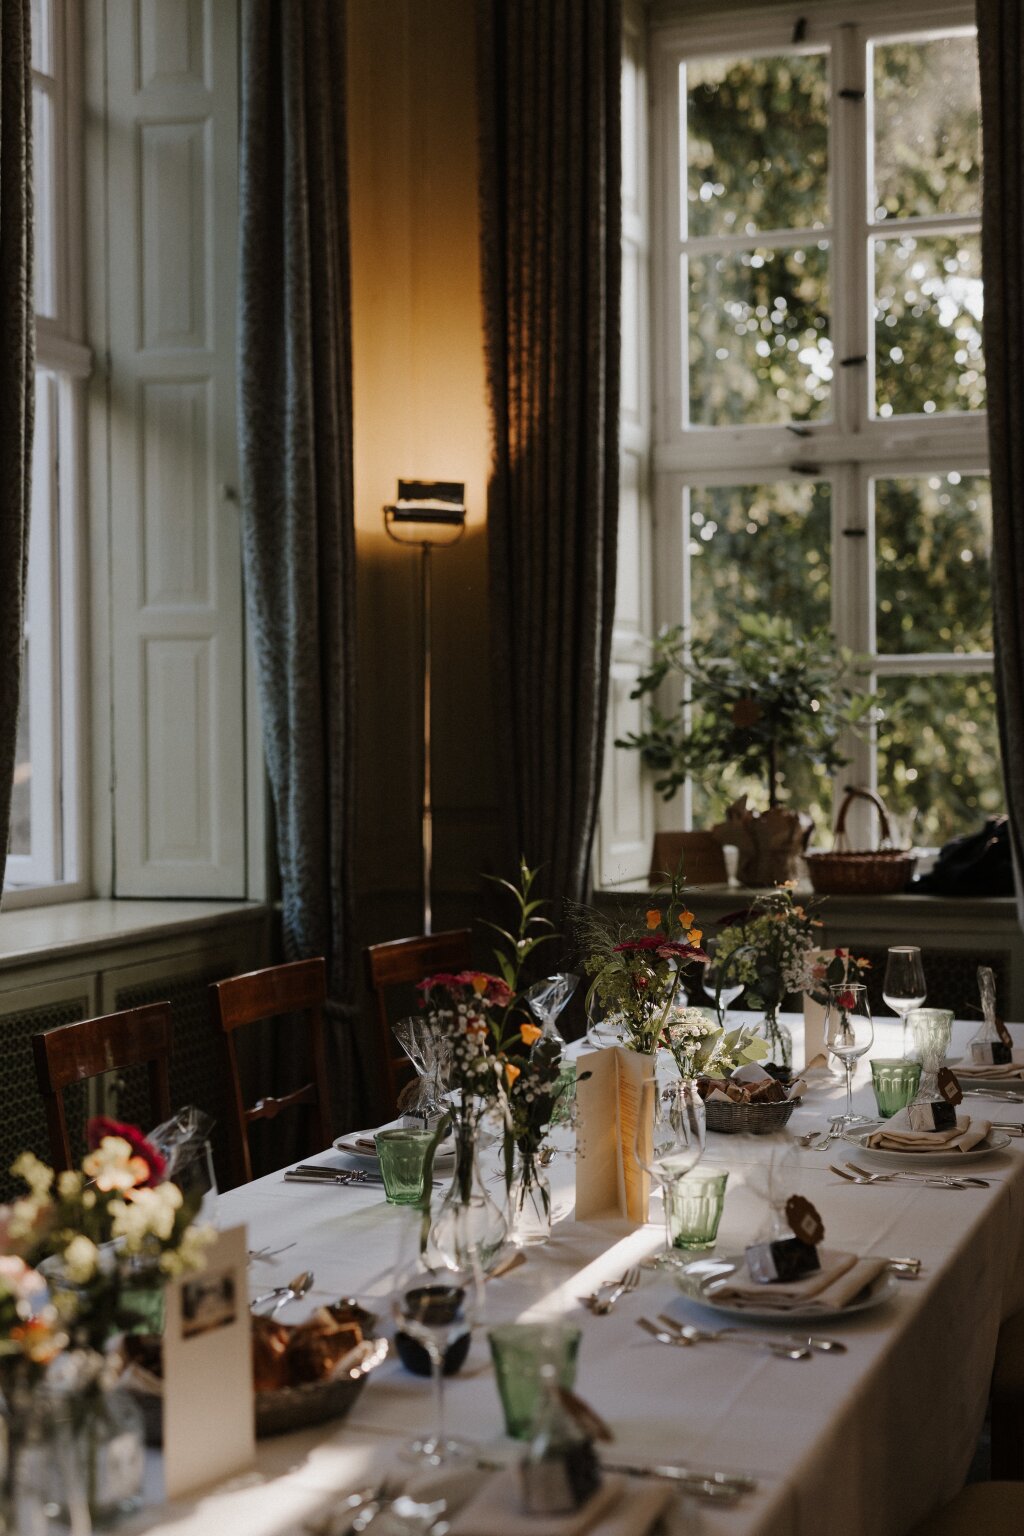 Ein festlich gedeckter Hochzeitstisch mit verschiedenen kleinen Vasen und Blumen. Eingedeckte Teller mit kleinen Gastgeschenken und Menükarten sind auf dem Tisch. Die Abendsonne fällt durch das Sprossenfenster hinein. In der Ecke steht eine Stehlampe und leuchtet die gemusterten, fließenden Gardinen an.